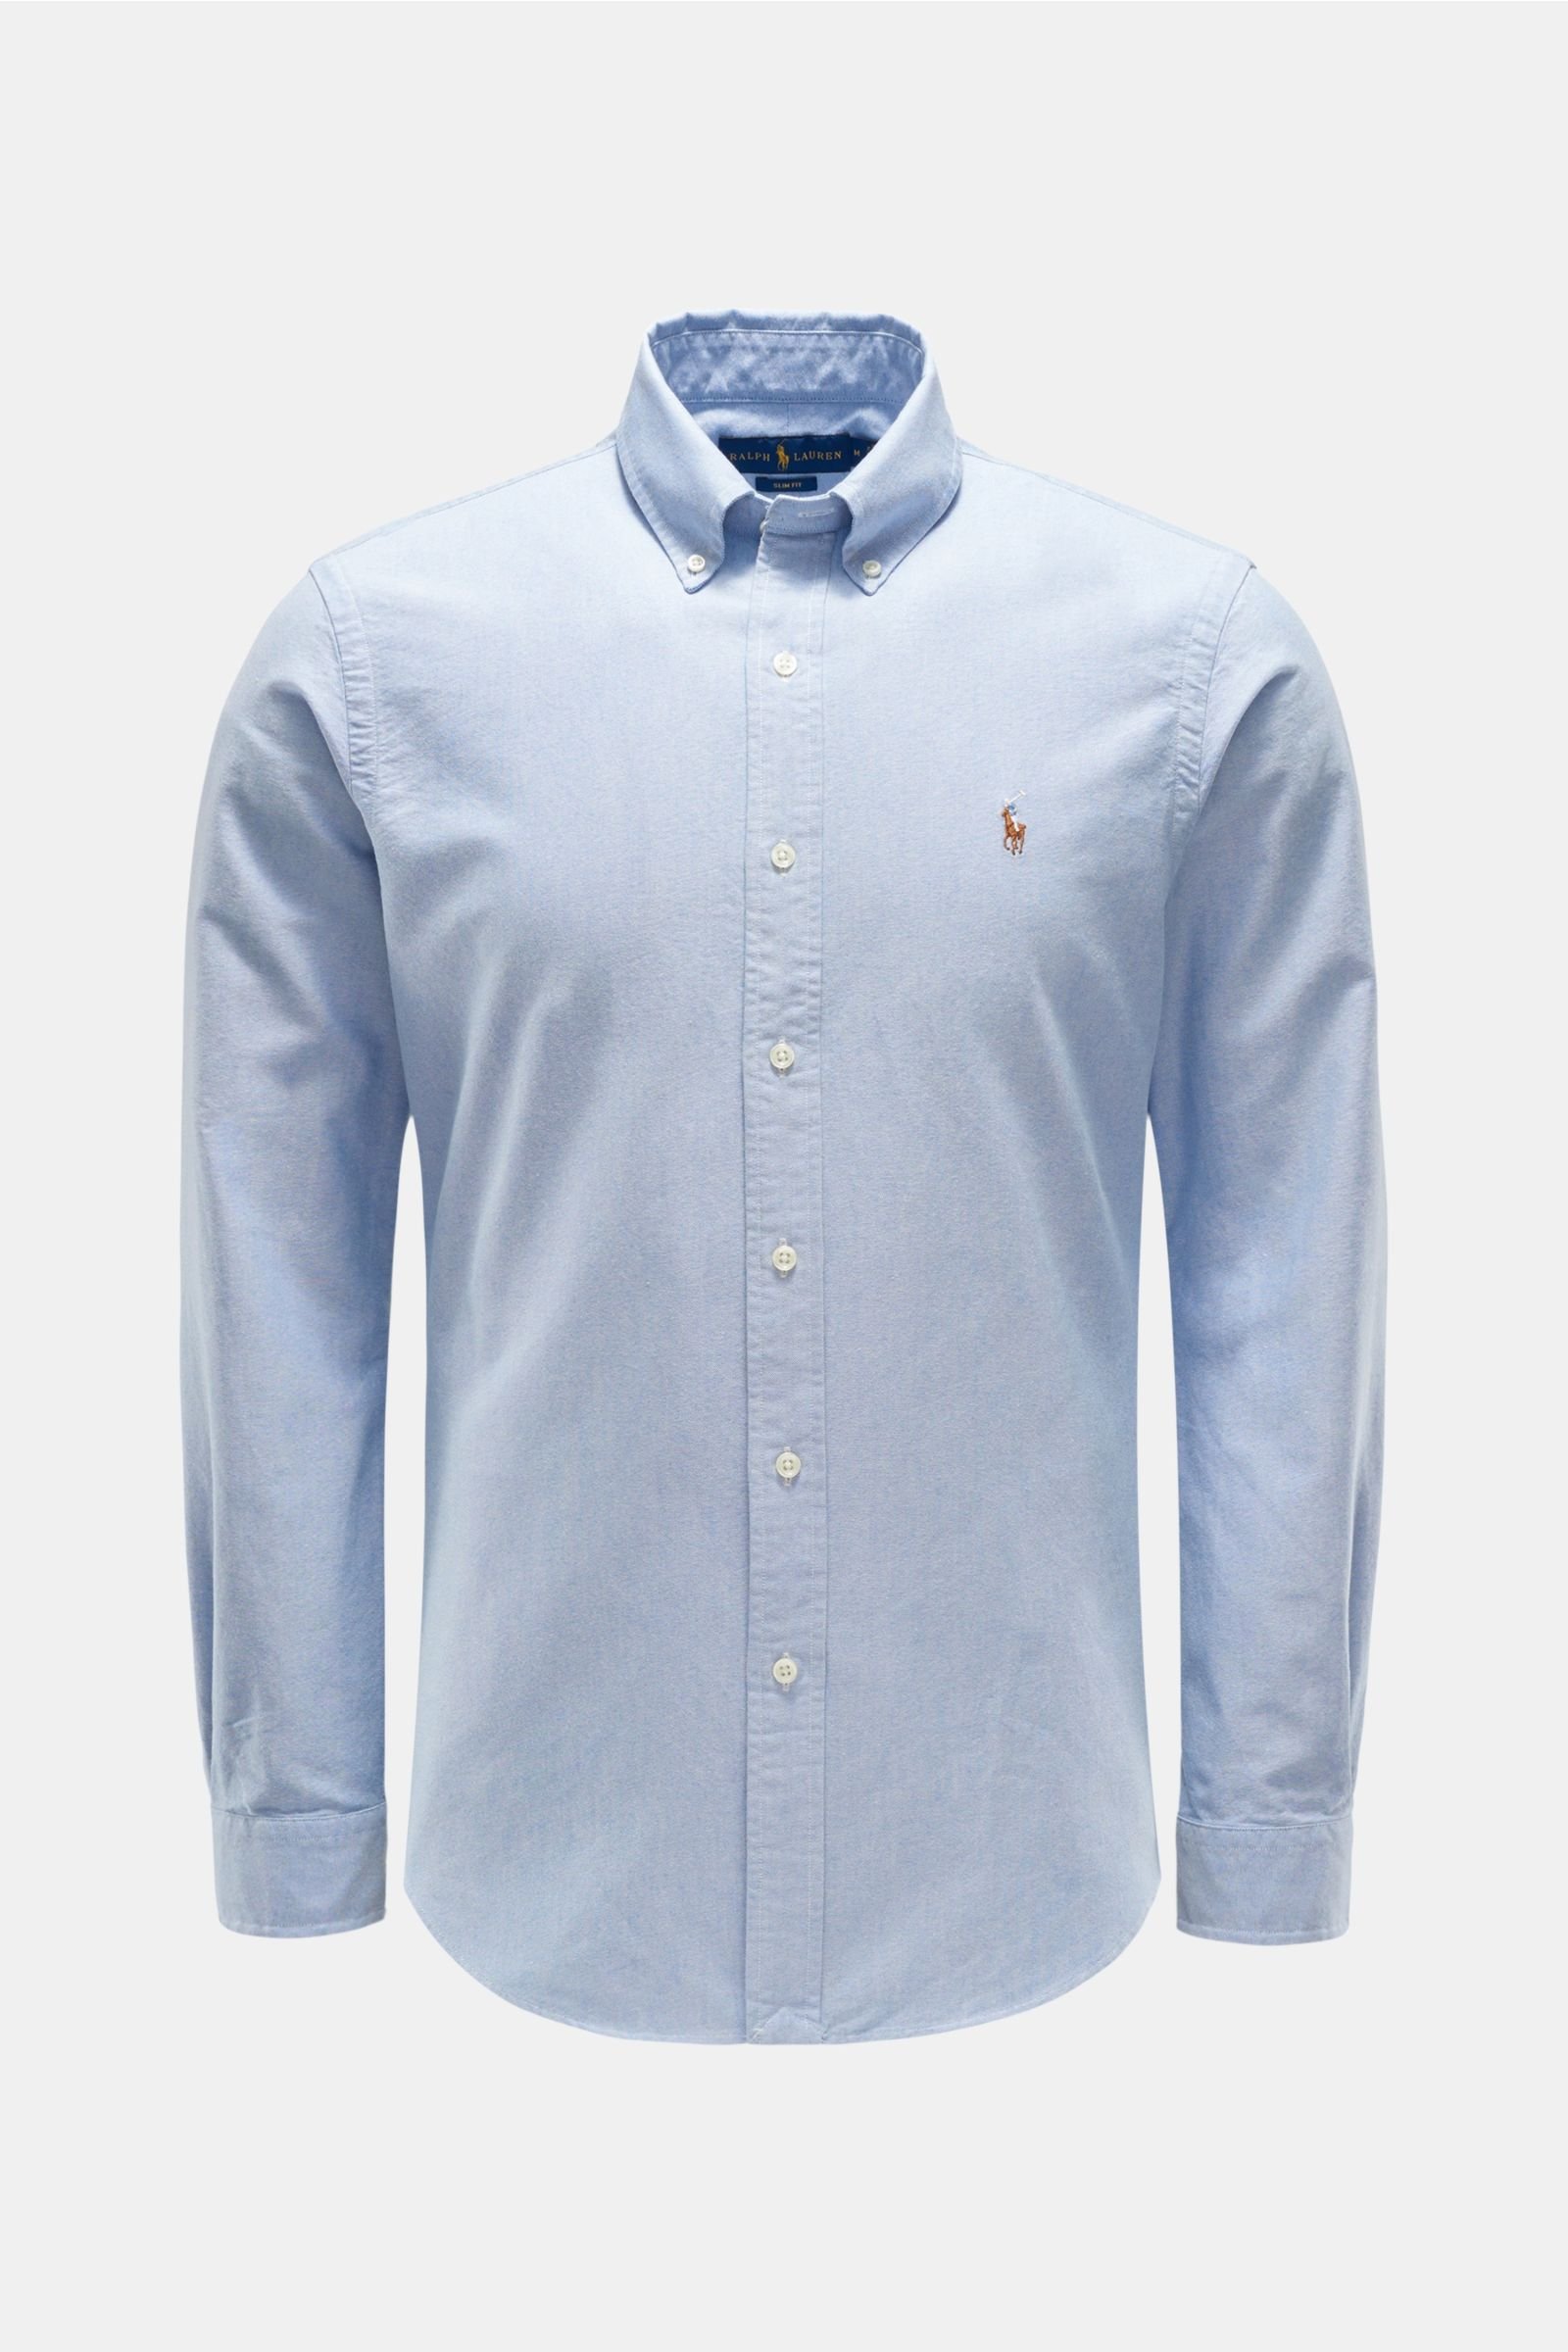 Oxfordhemd Button-Down-Kragen hellblau